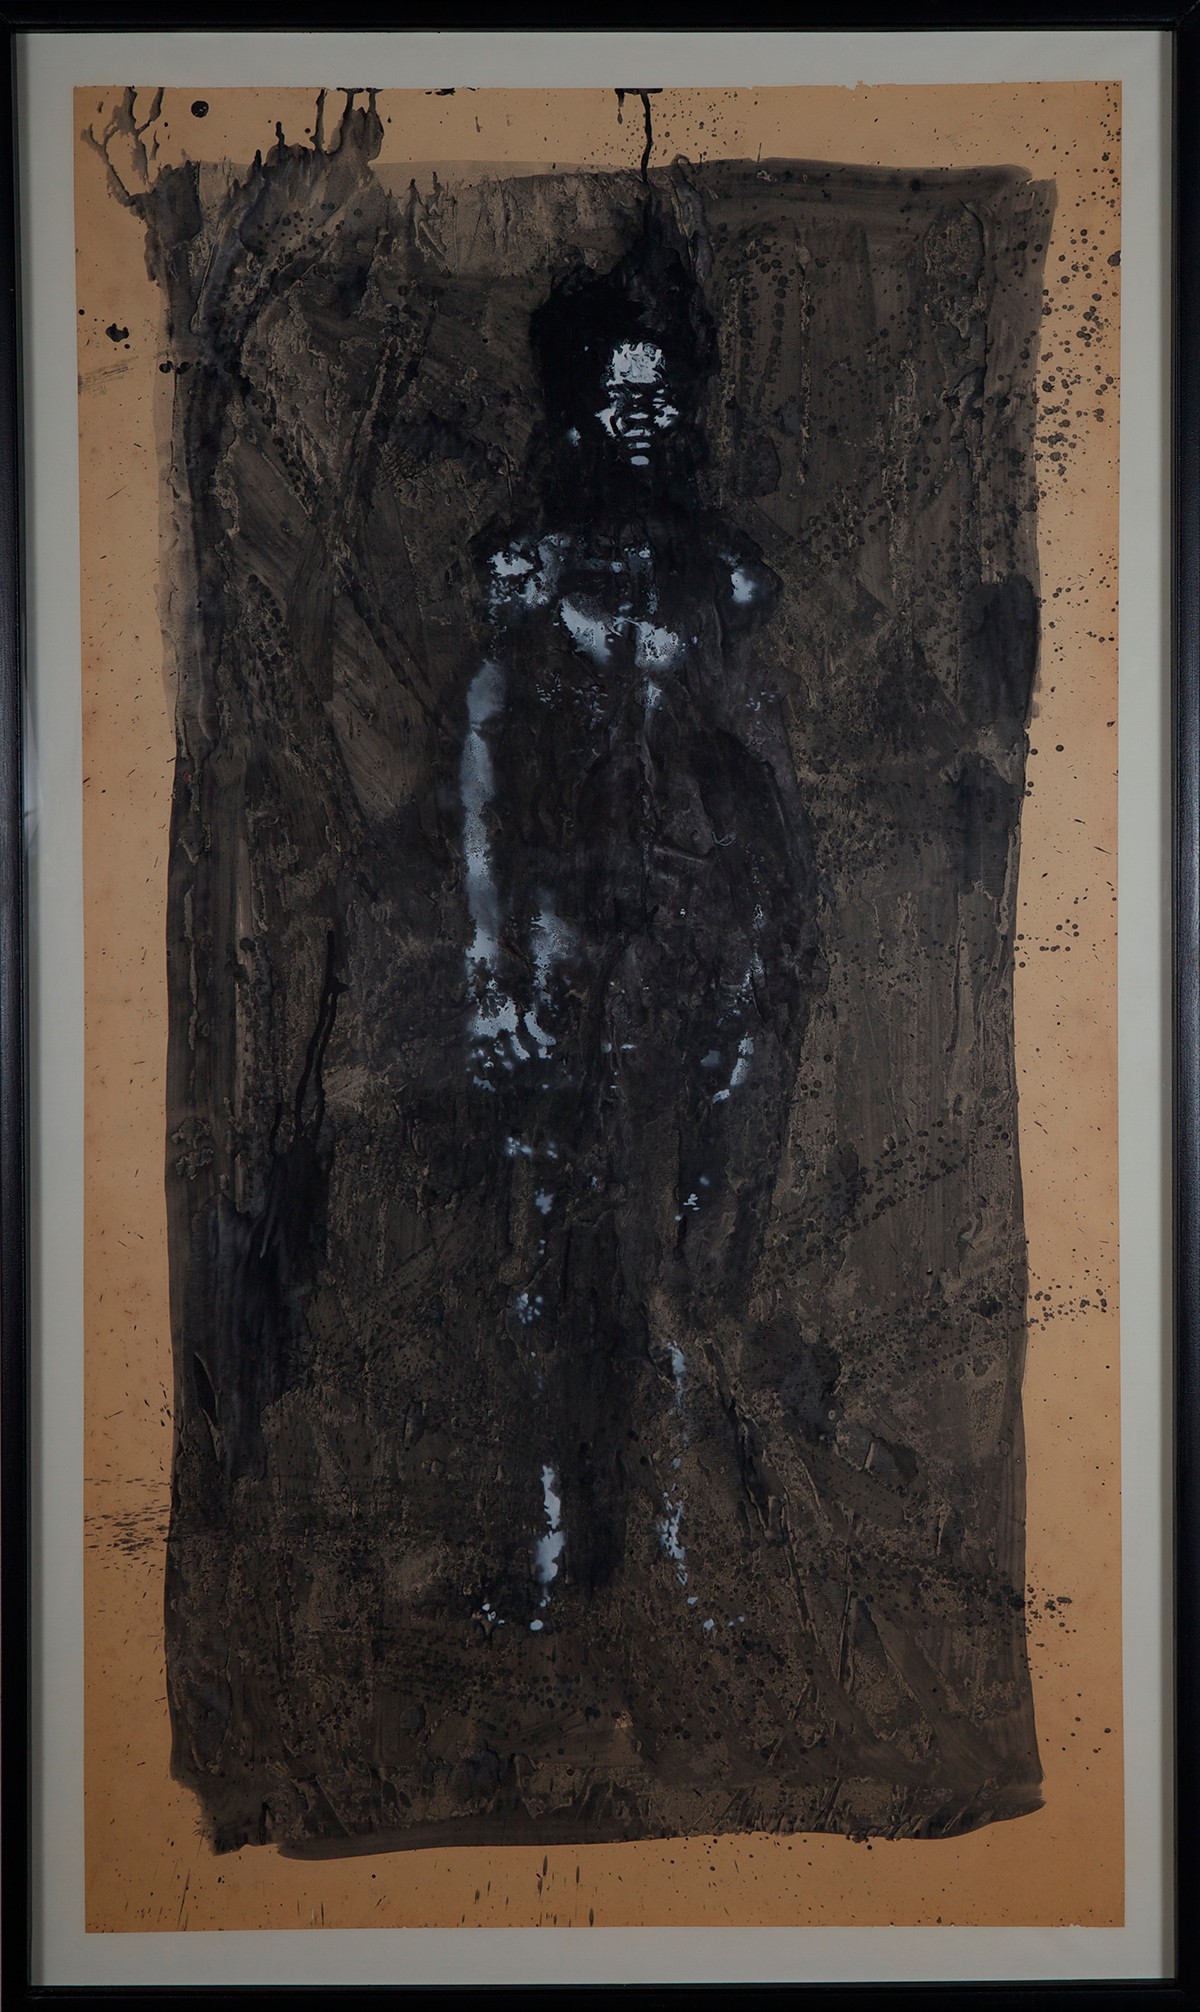 Wilhiam Zitte, Sans titre, 1994, Techniques mixtes, 80 x 150 cm. Collection FRAC RÉUNION